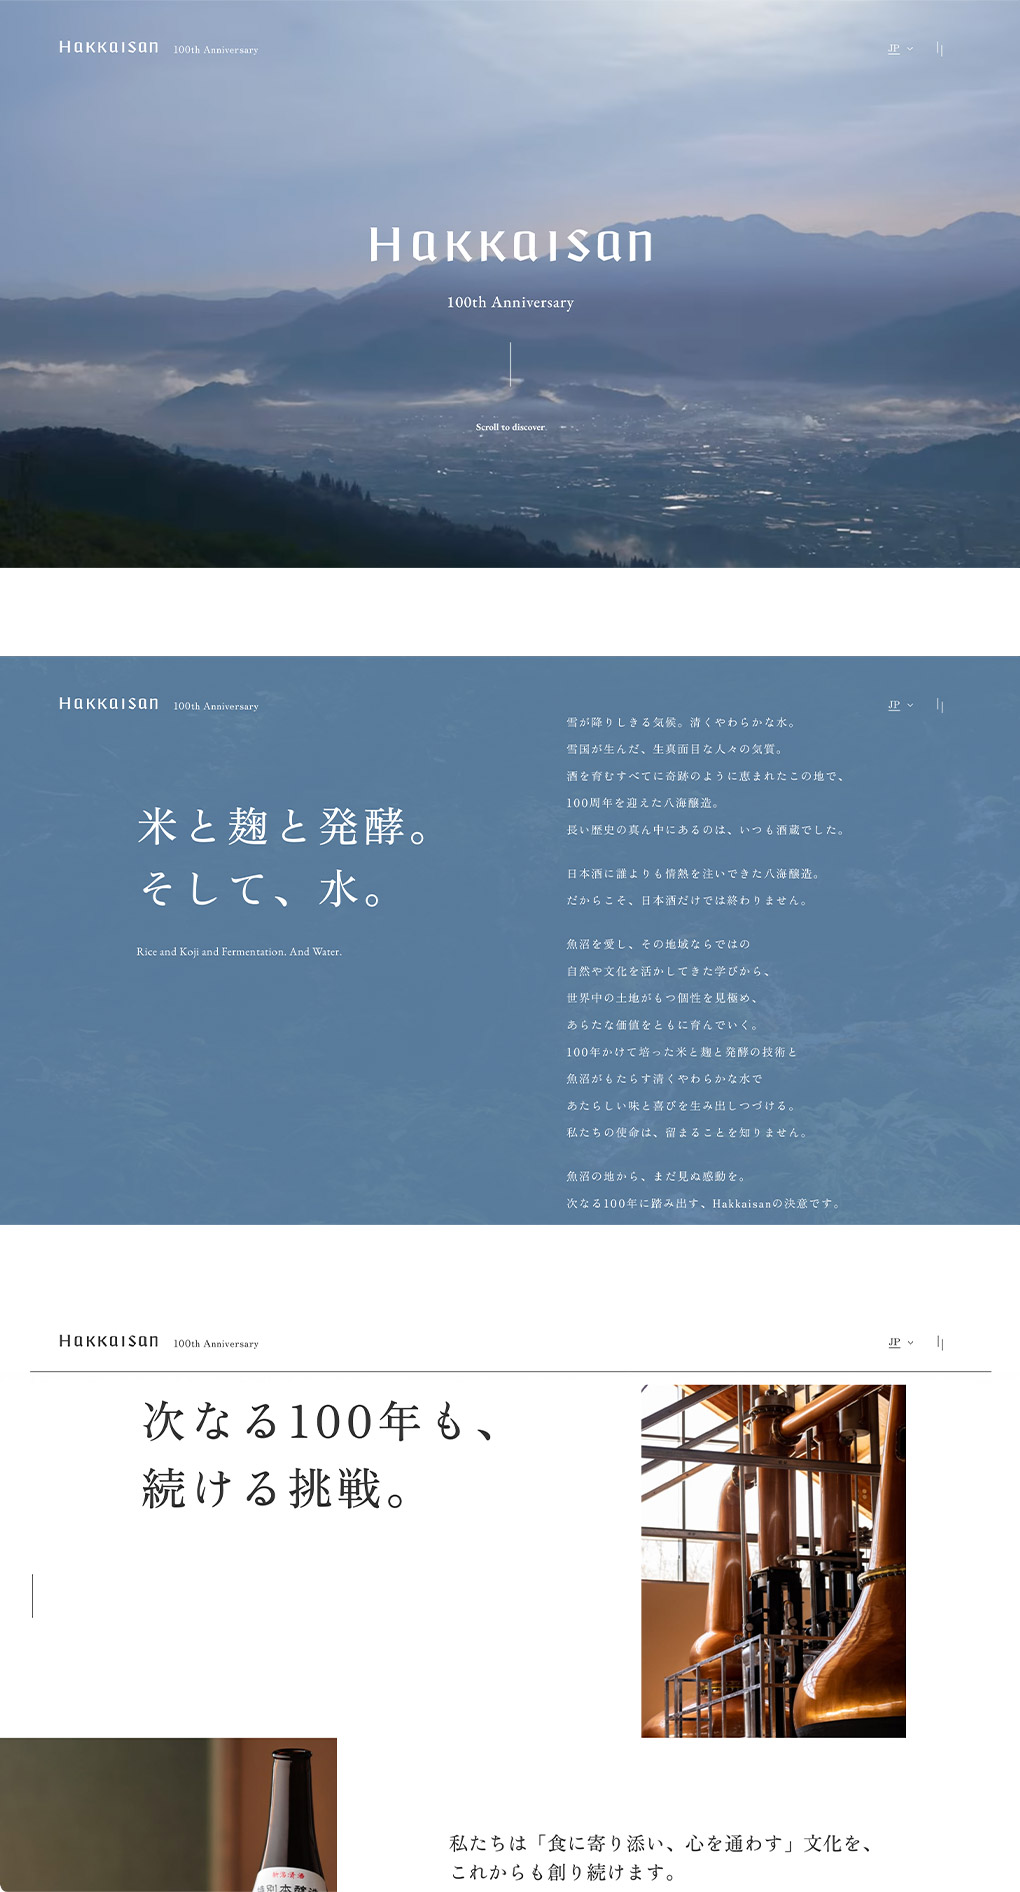 八海山 100周年記念サイトのメイン画像が表示されています